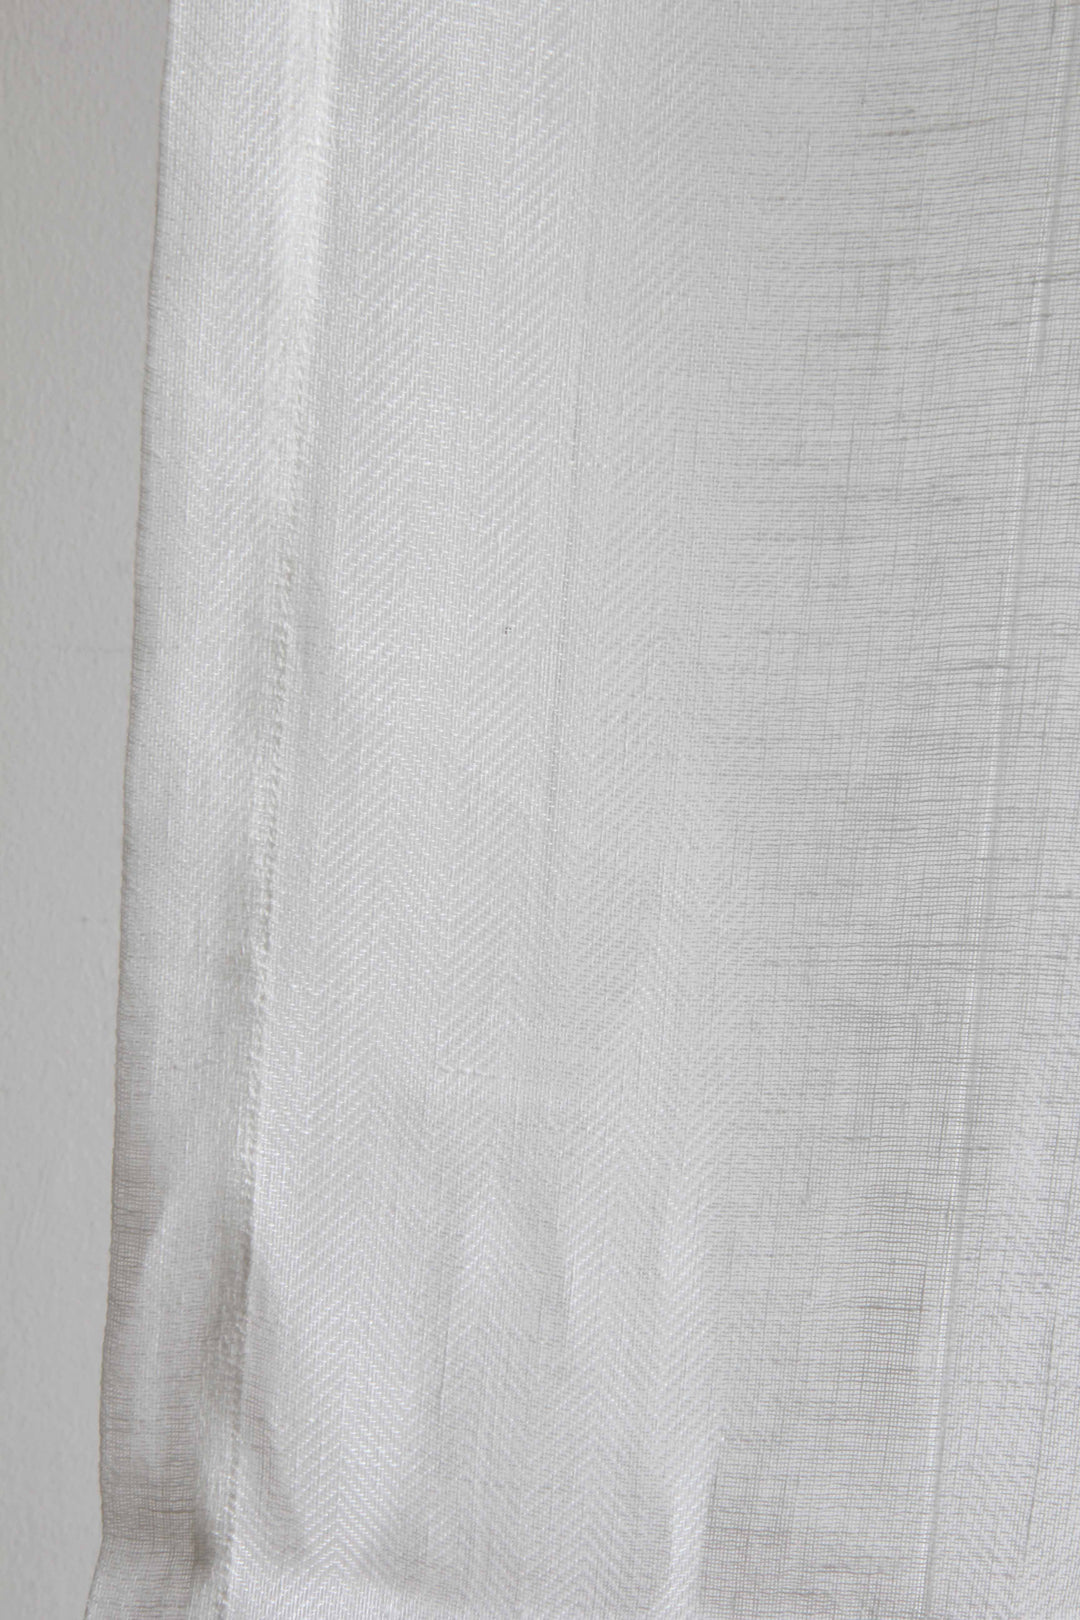 Linen Voile Curtain Chevron Milk / 140 X 280cm